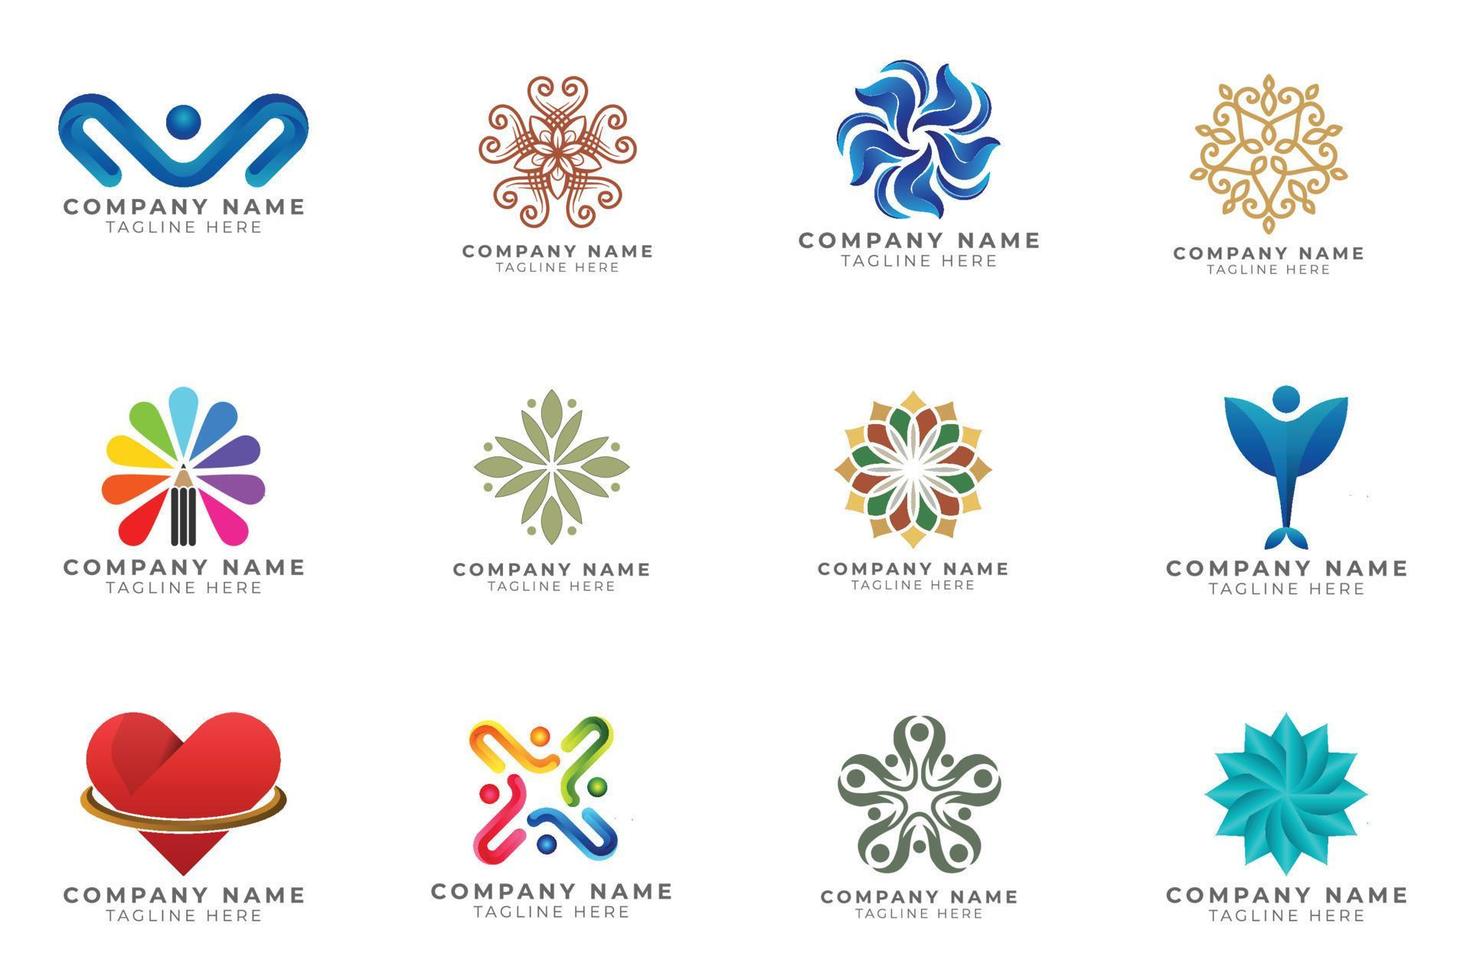 ensemble de logos collection d'idées de marque moderne et créative pour entreprise. vecteur